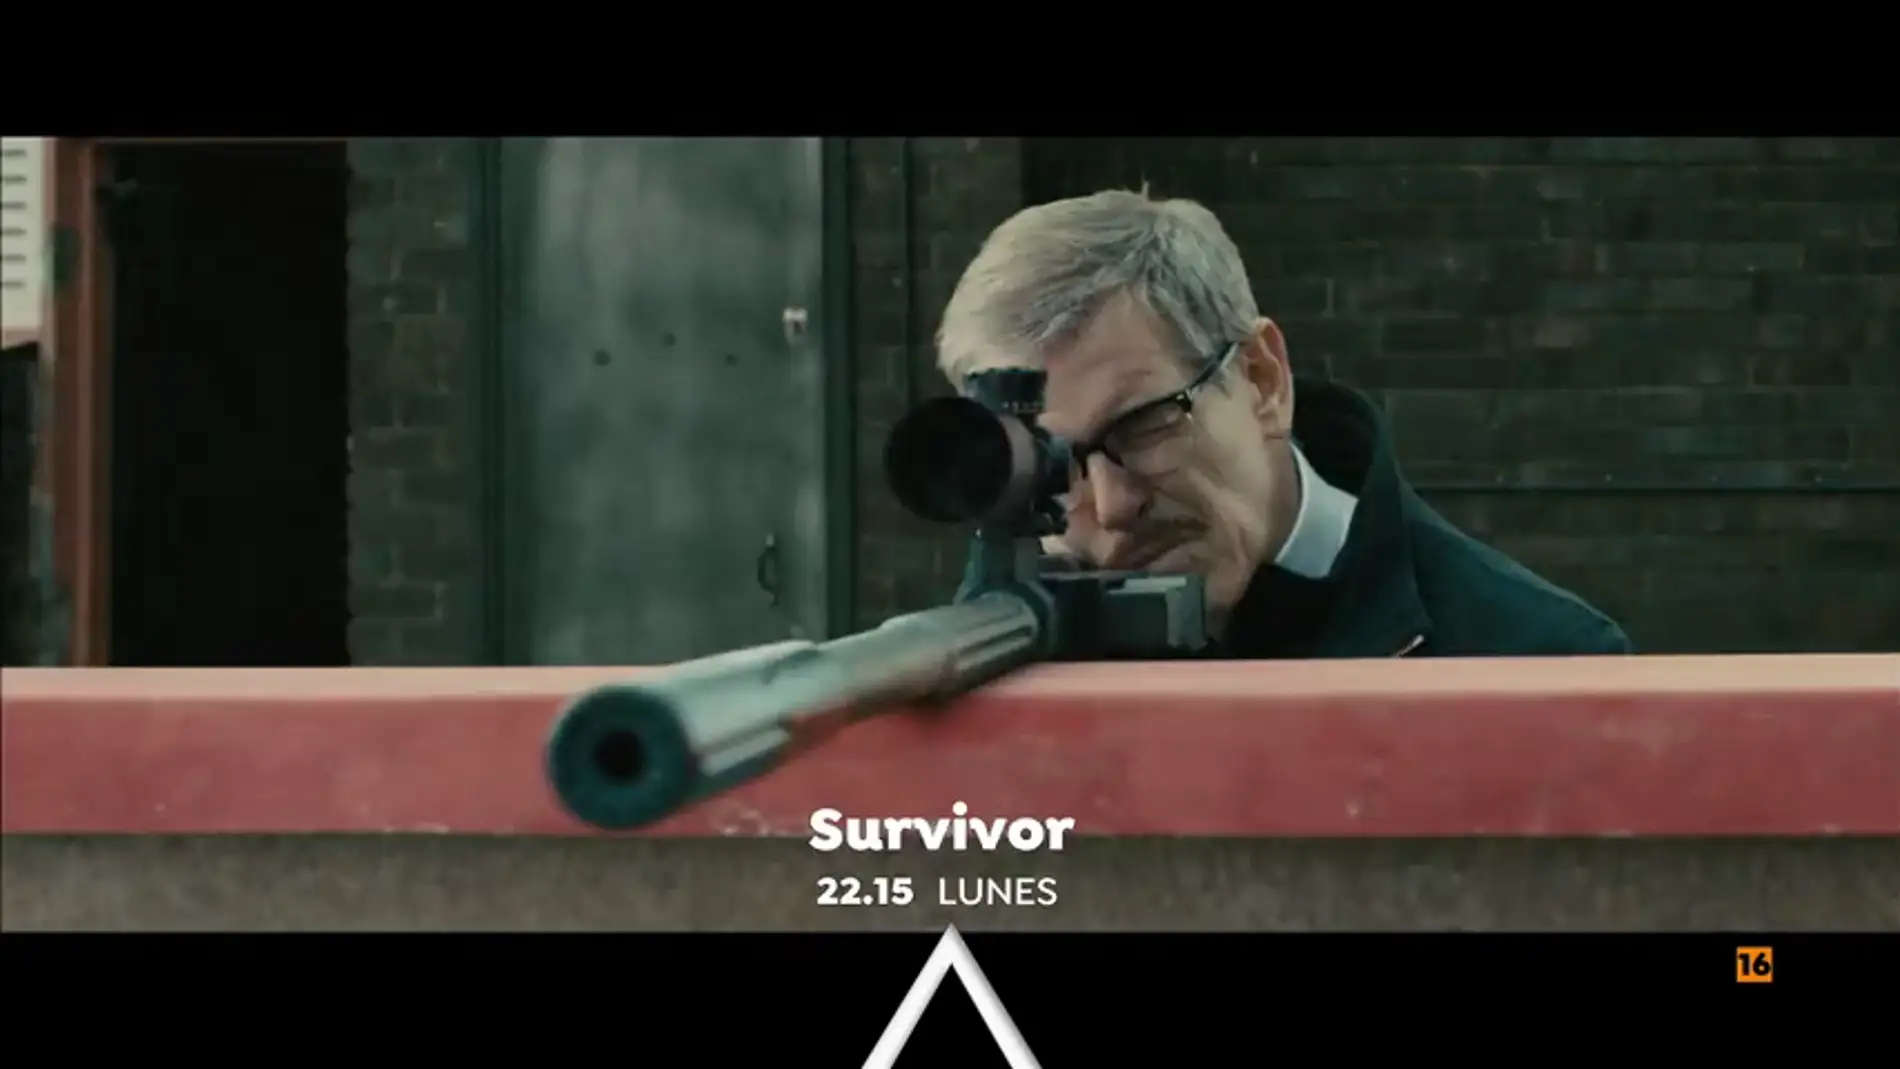 Cine de acción en Antena 3 con 'Survivor'